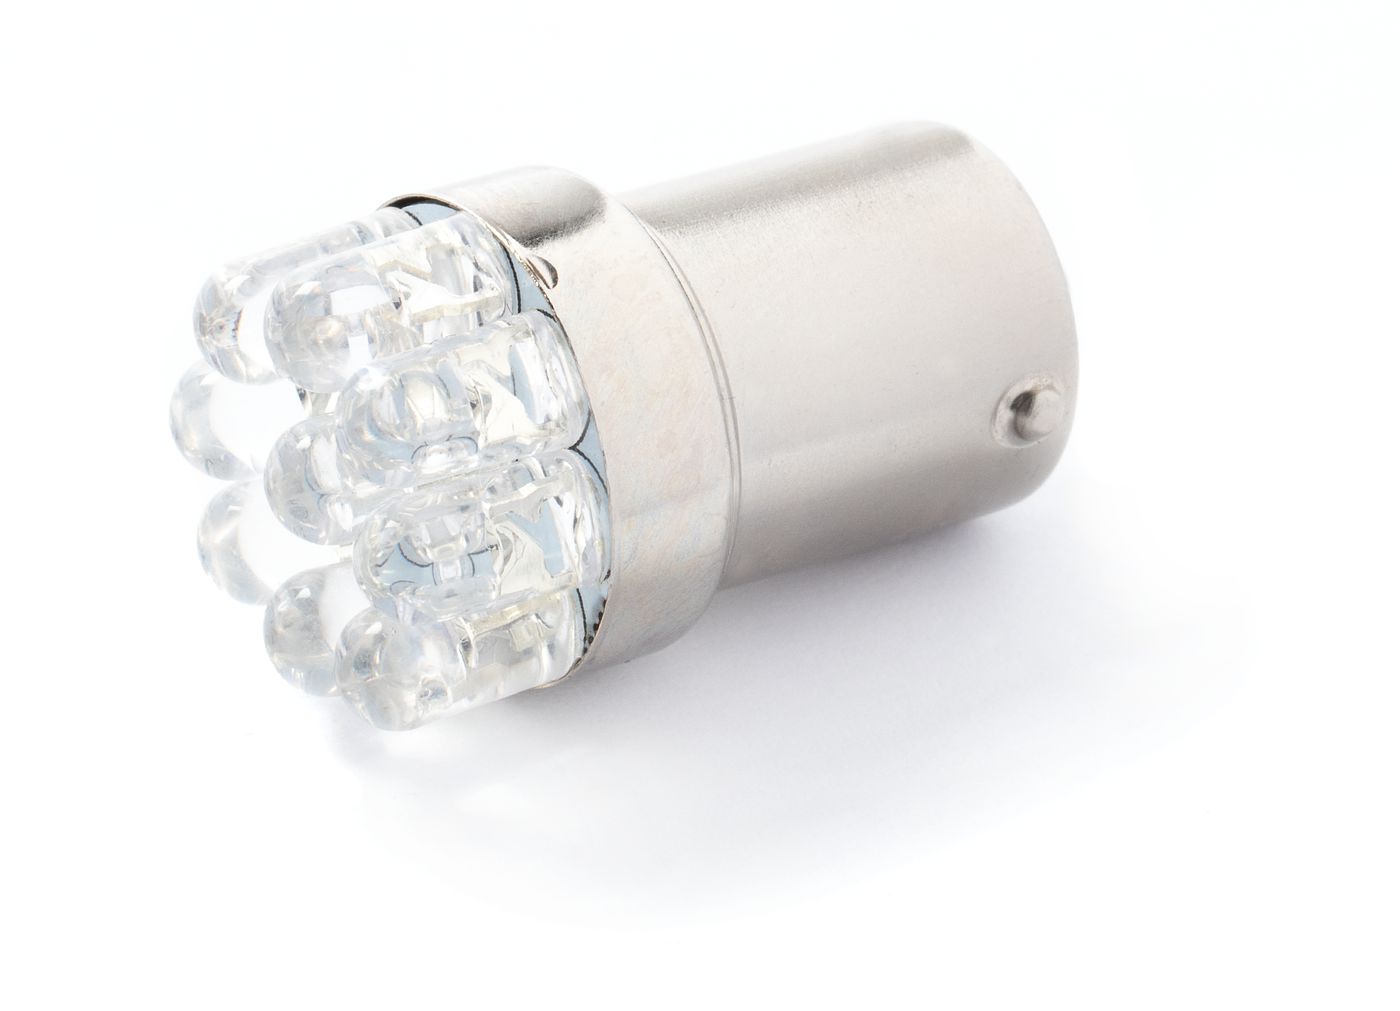 LED-Leuchte
LED lamp
Lampe à diode électroluminescente (DEL)
L